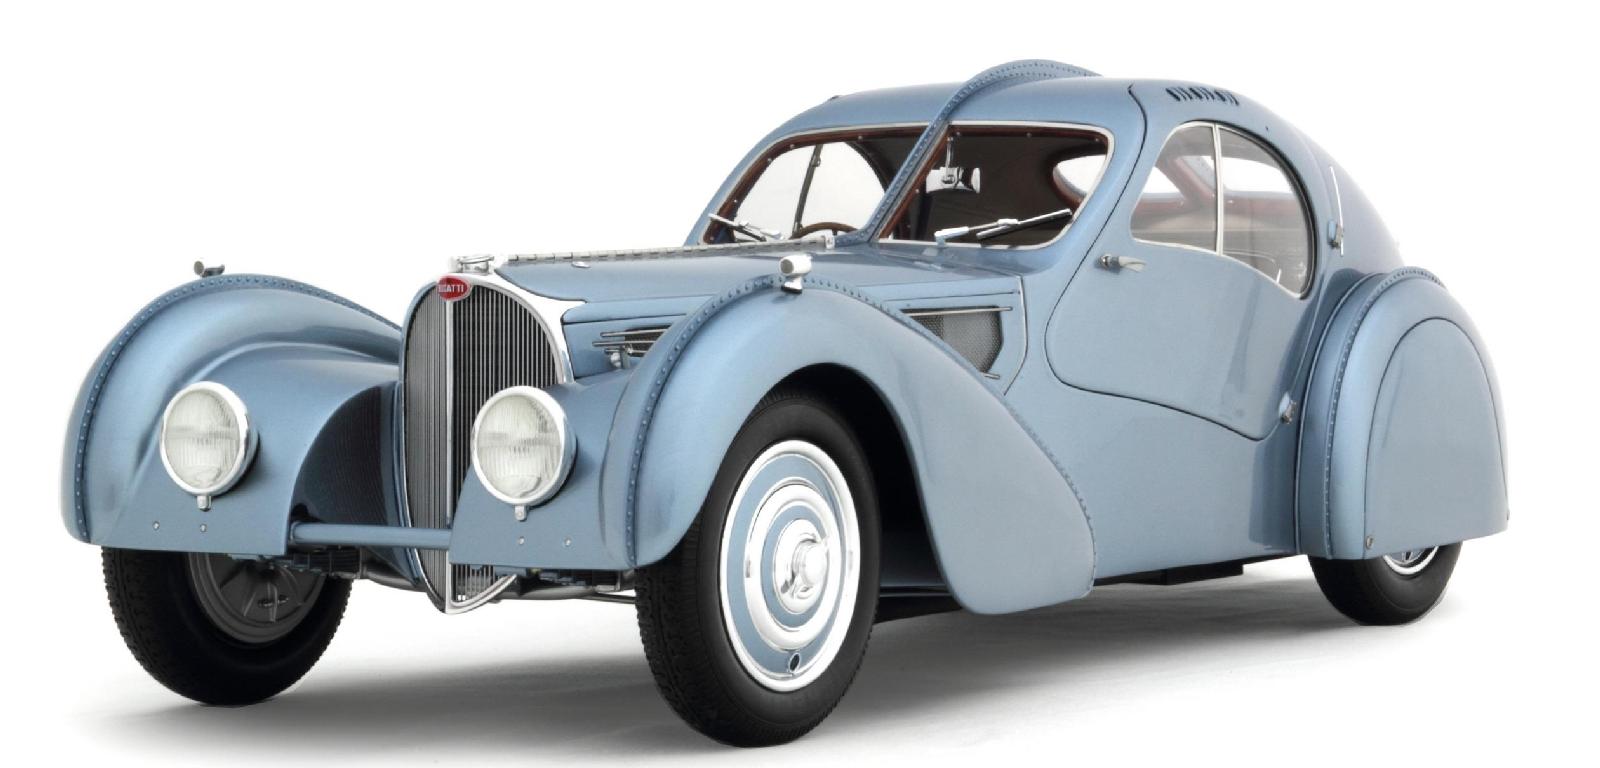 the Bugatti Page: Collector Studio Bugatti Type 57SC Atlantic 1:8 model